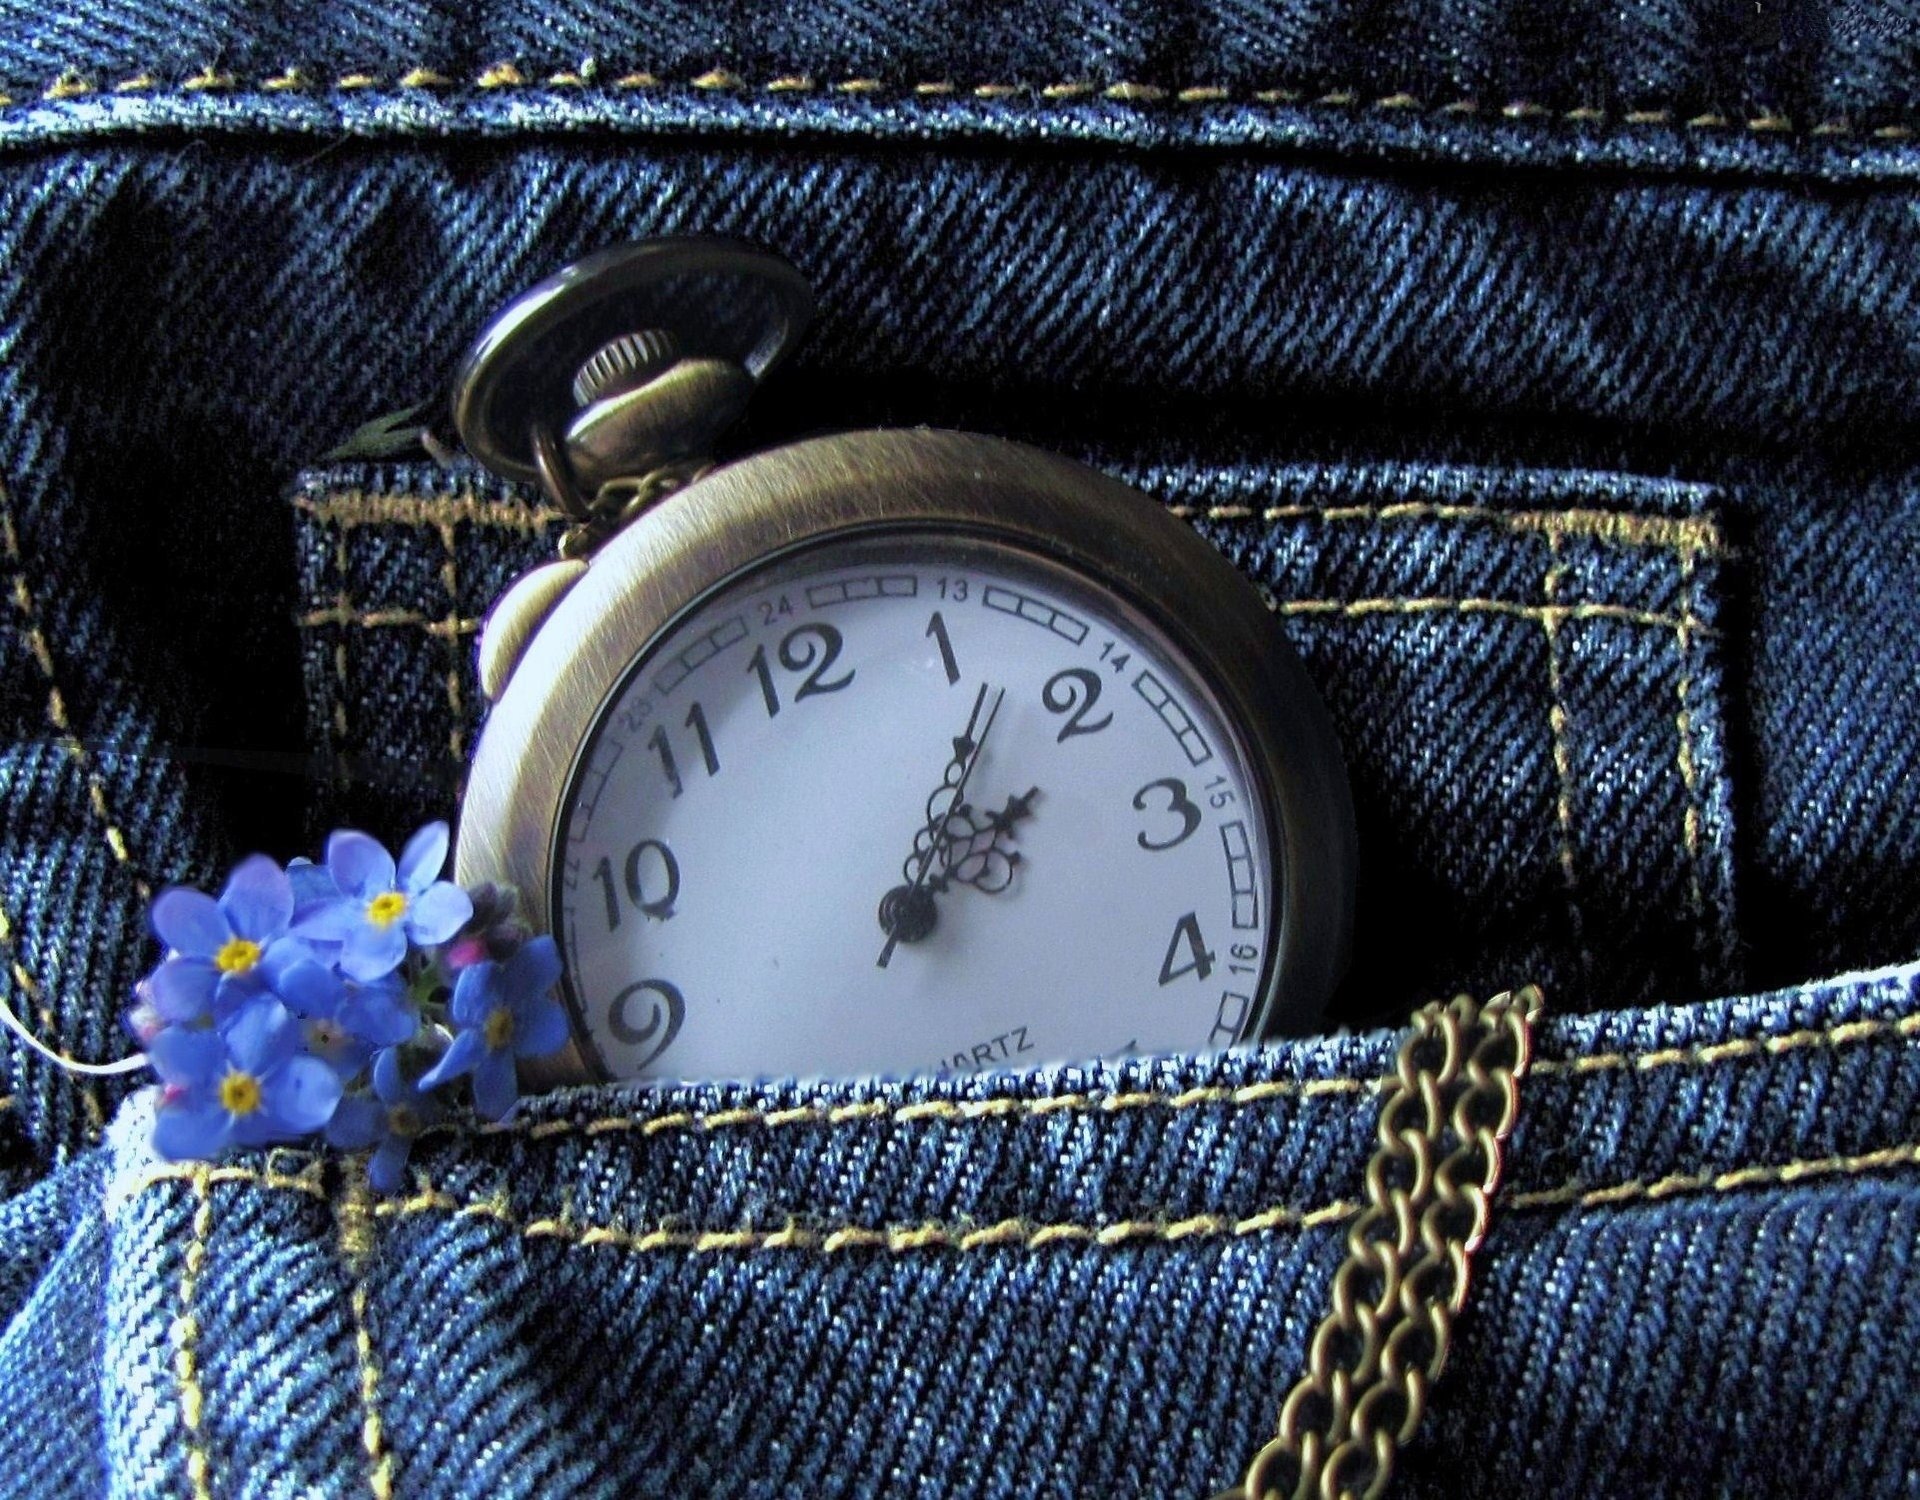 Карманные часы в джинсах и синяя сирень